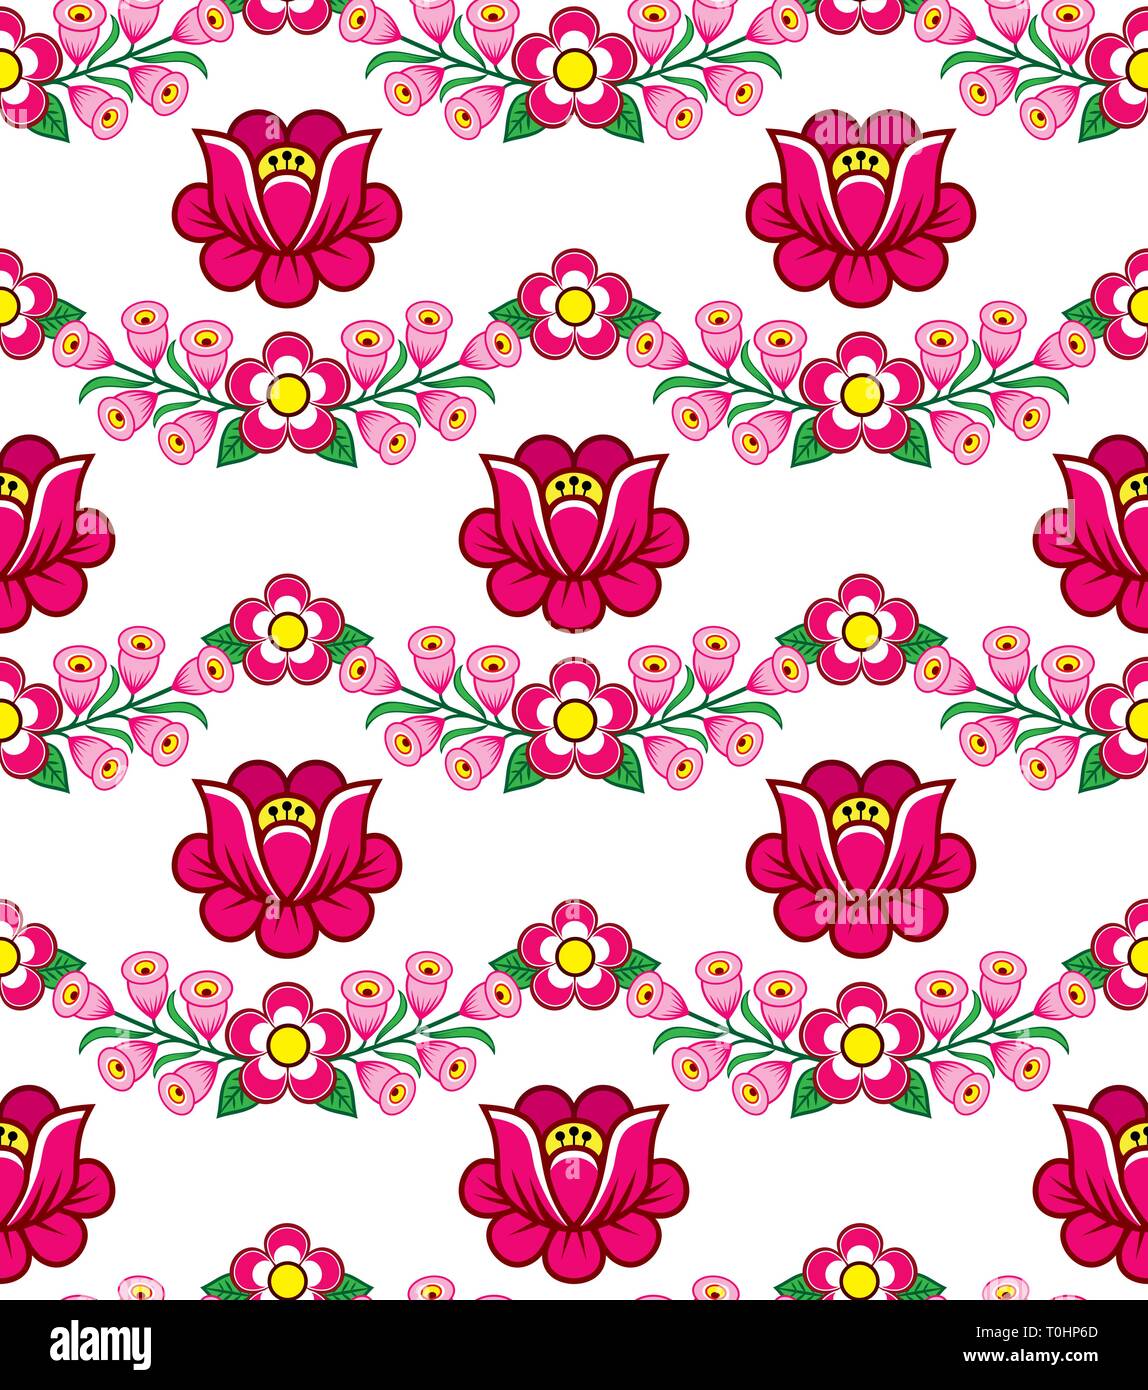 Arte popolare seamless floral pattern vettoriali, polacco graziosi ornamenti tradizionali, folk disegni con fiori da Zalipie, Polonia - tessile, wallpaper design Illustrazione Vettoriale